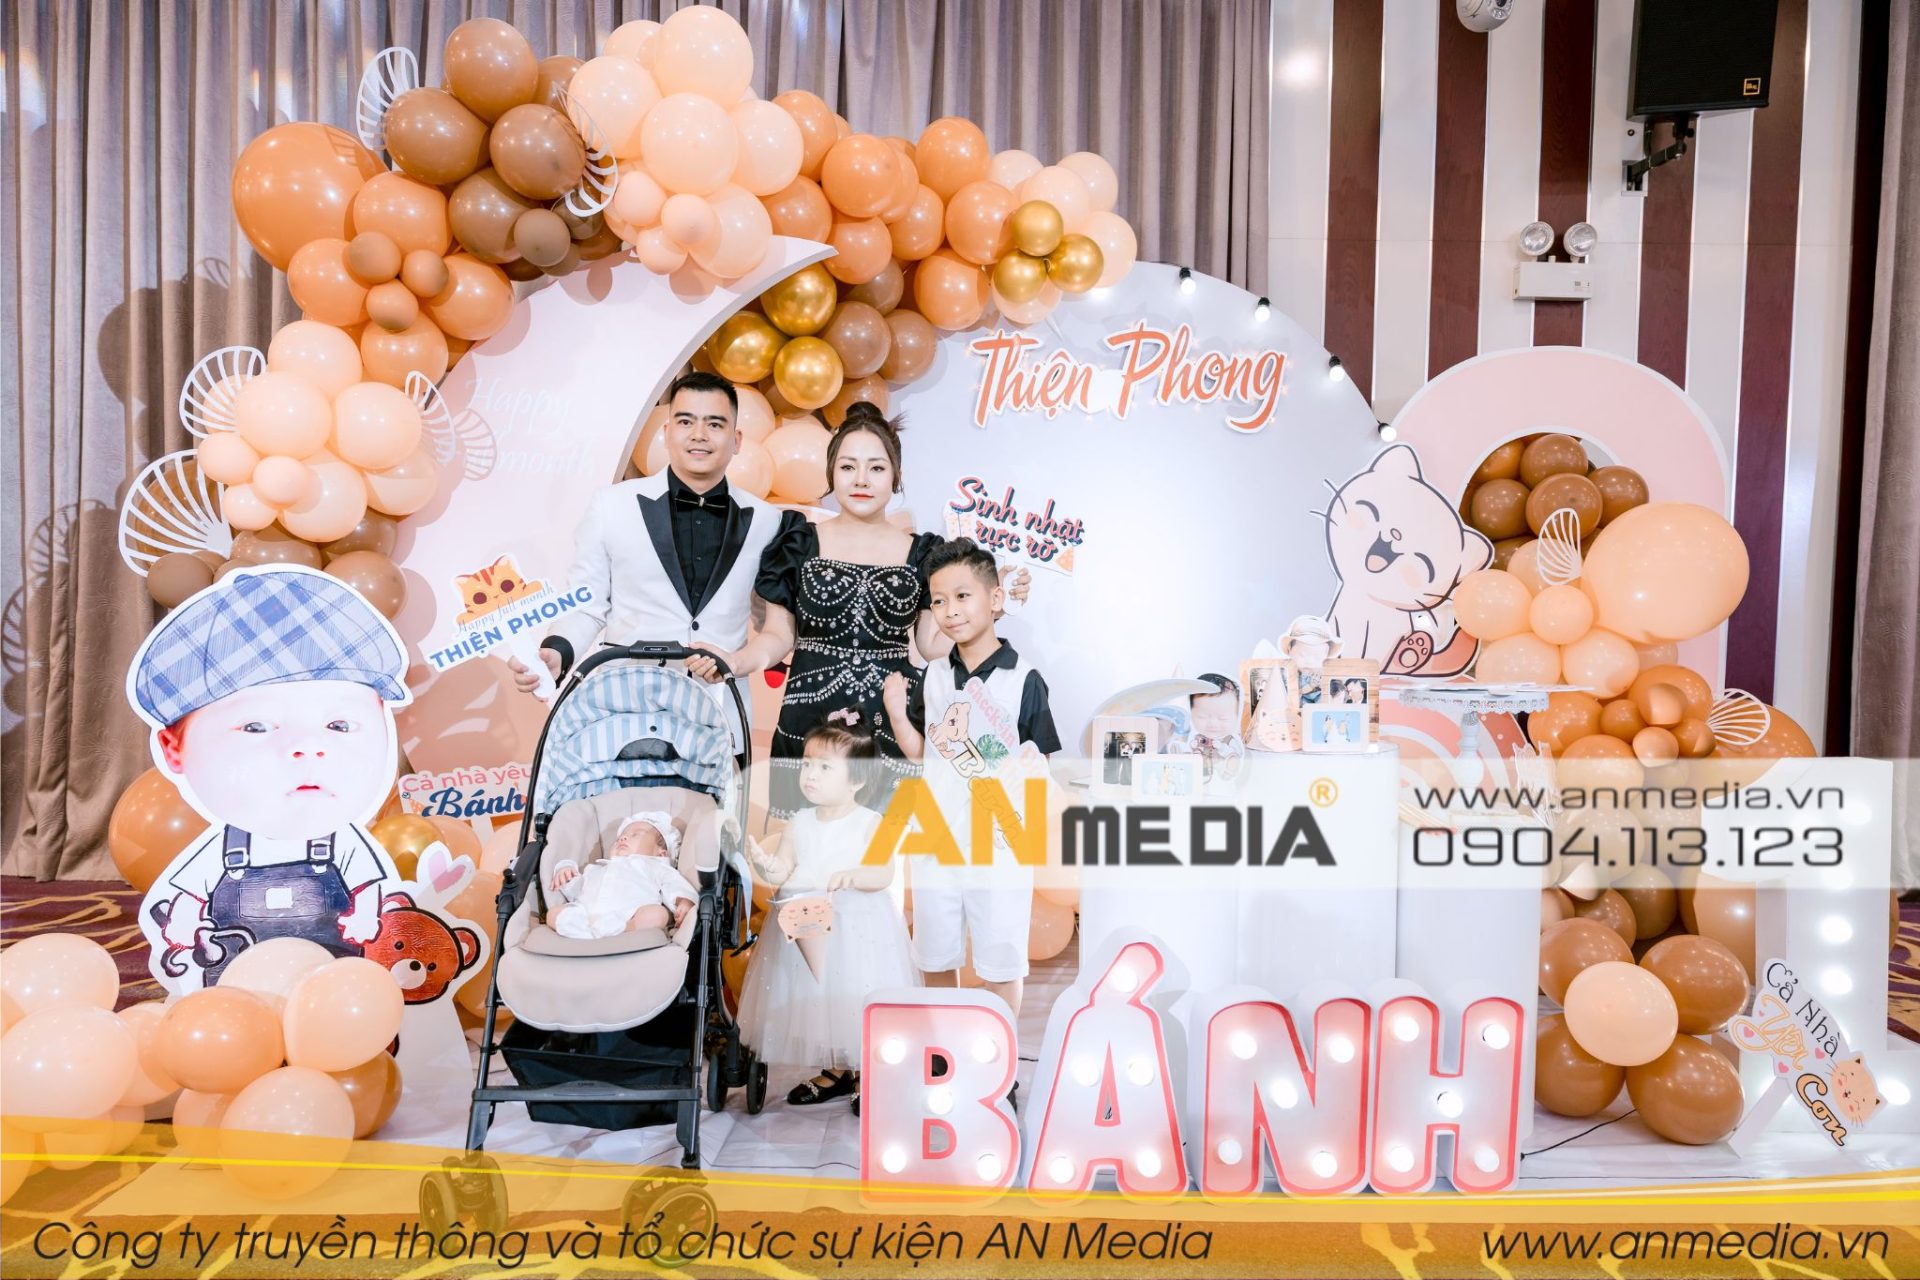 AN Media tổ chức tiệc sinh nhật mẹ Thùy Dương và tiệc đầy tháng bé Thiện Phong